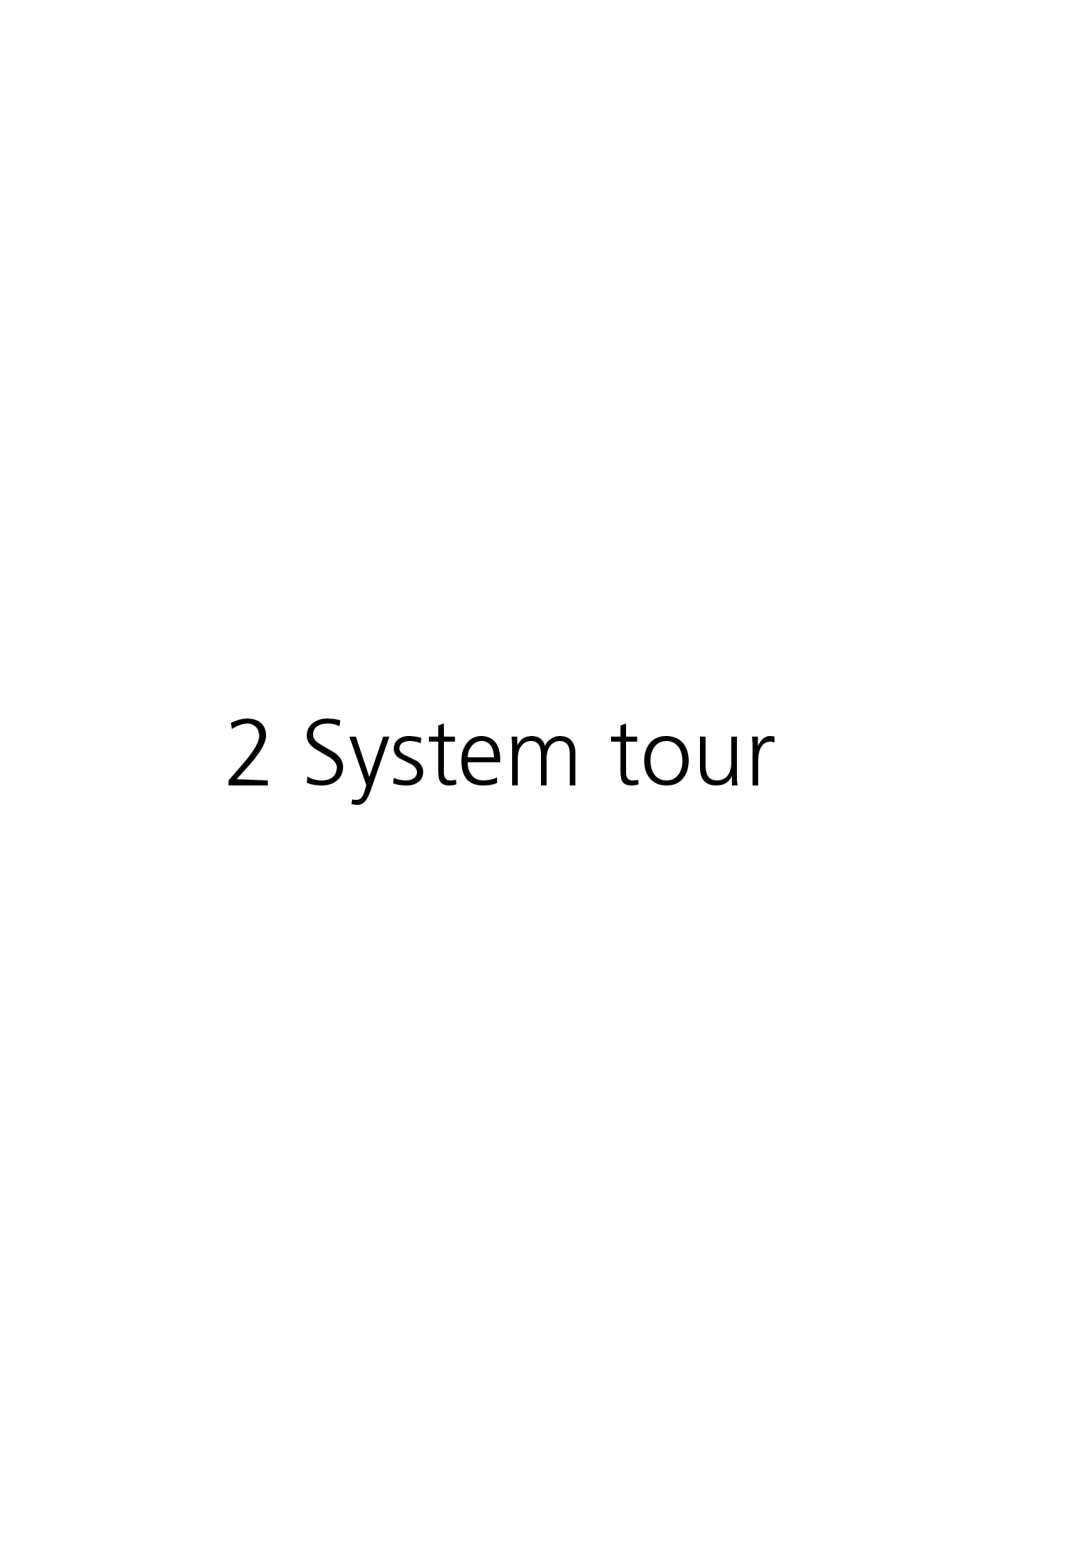 Acer Altos R710 manual System tour 